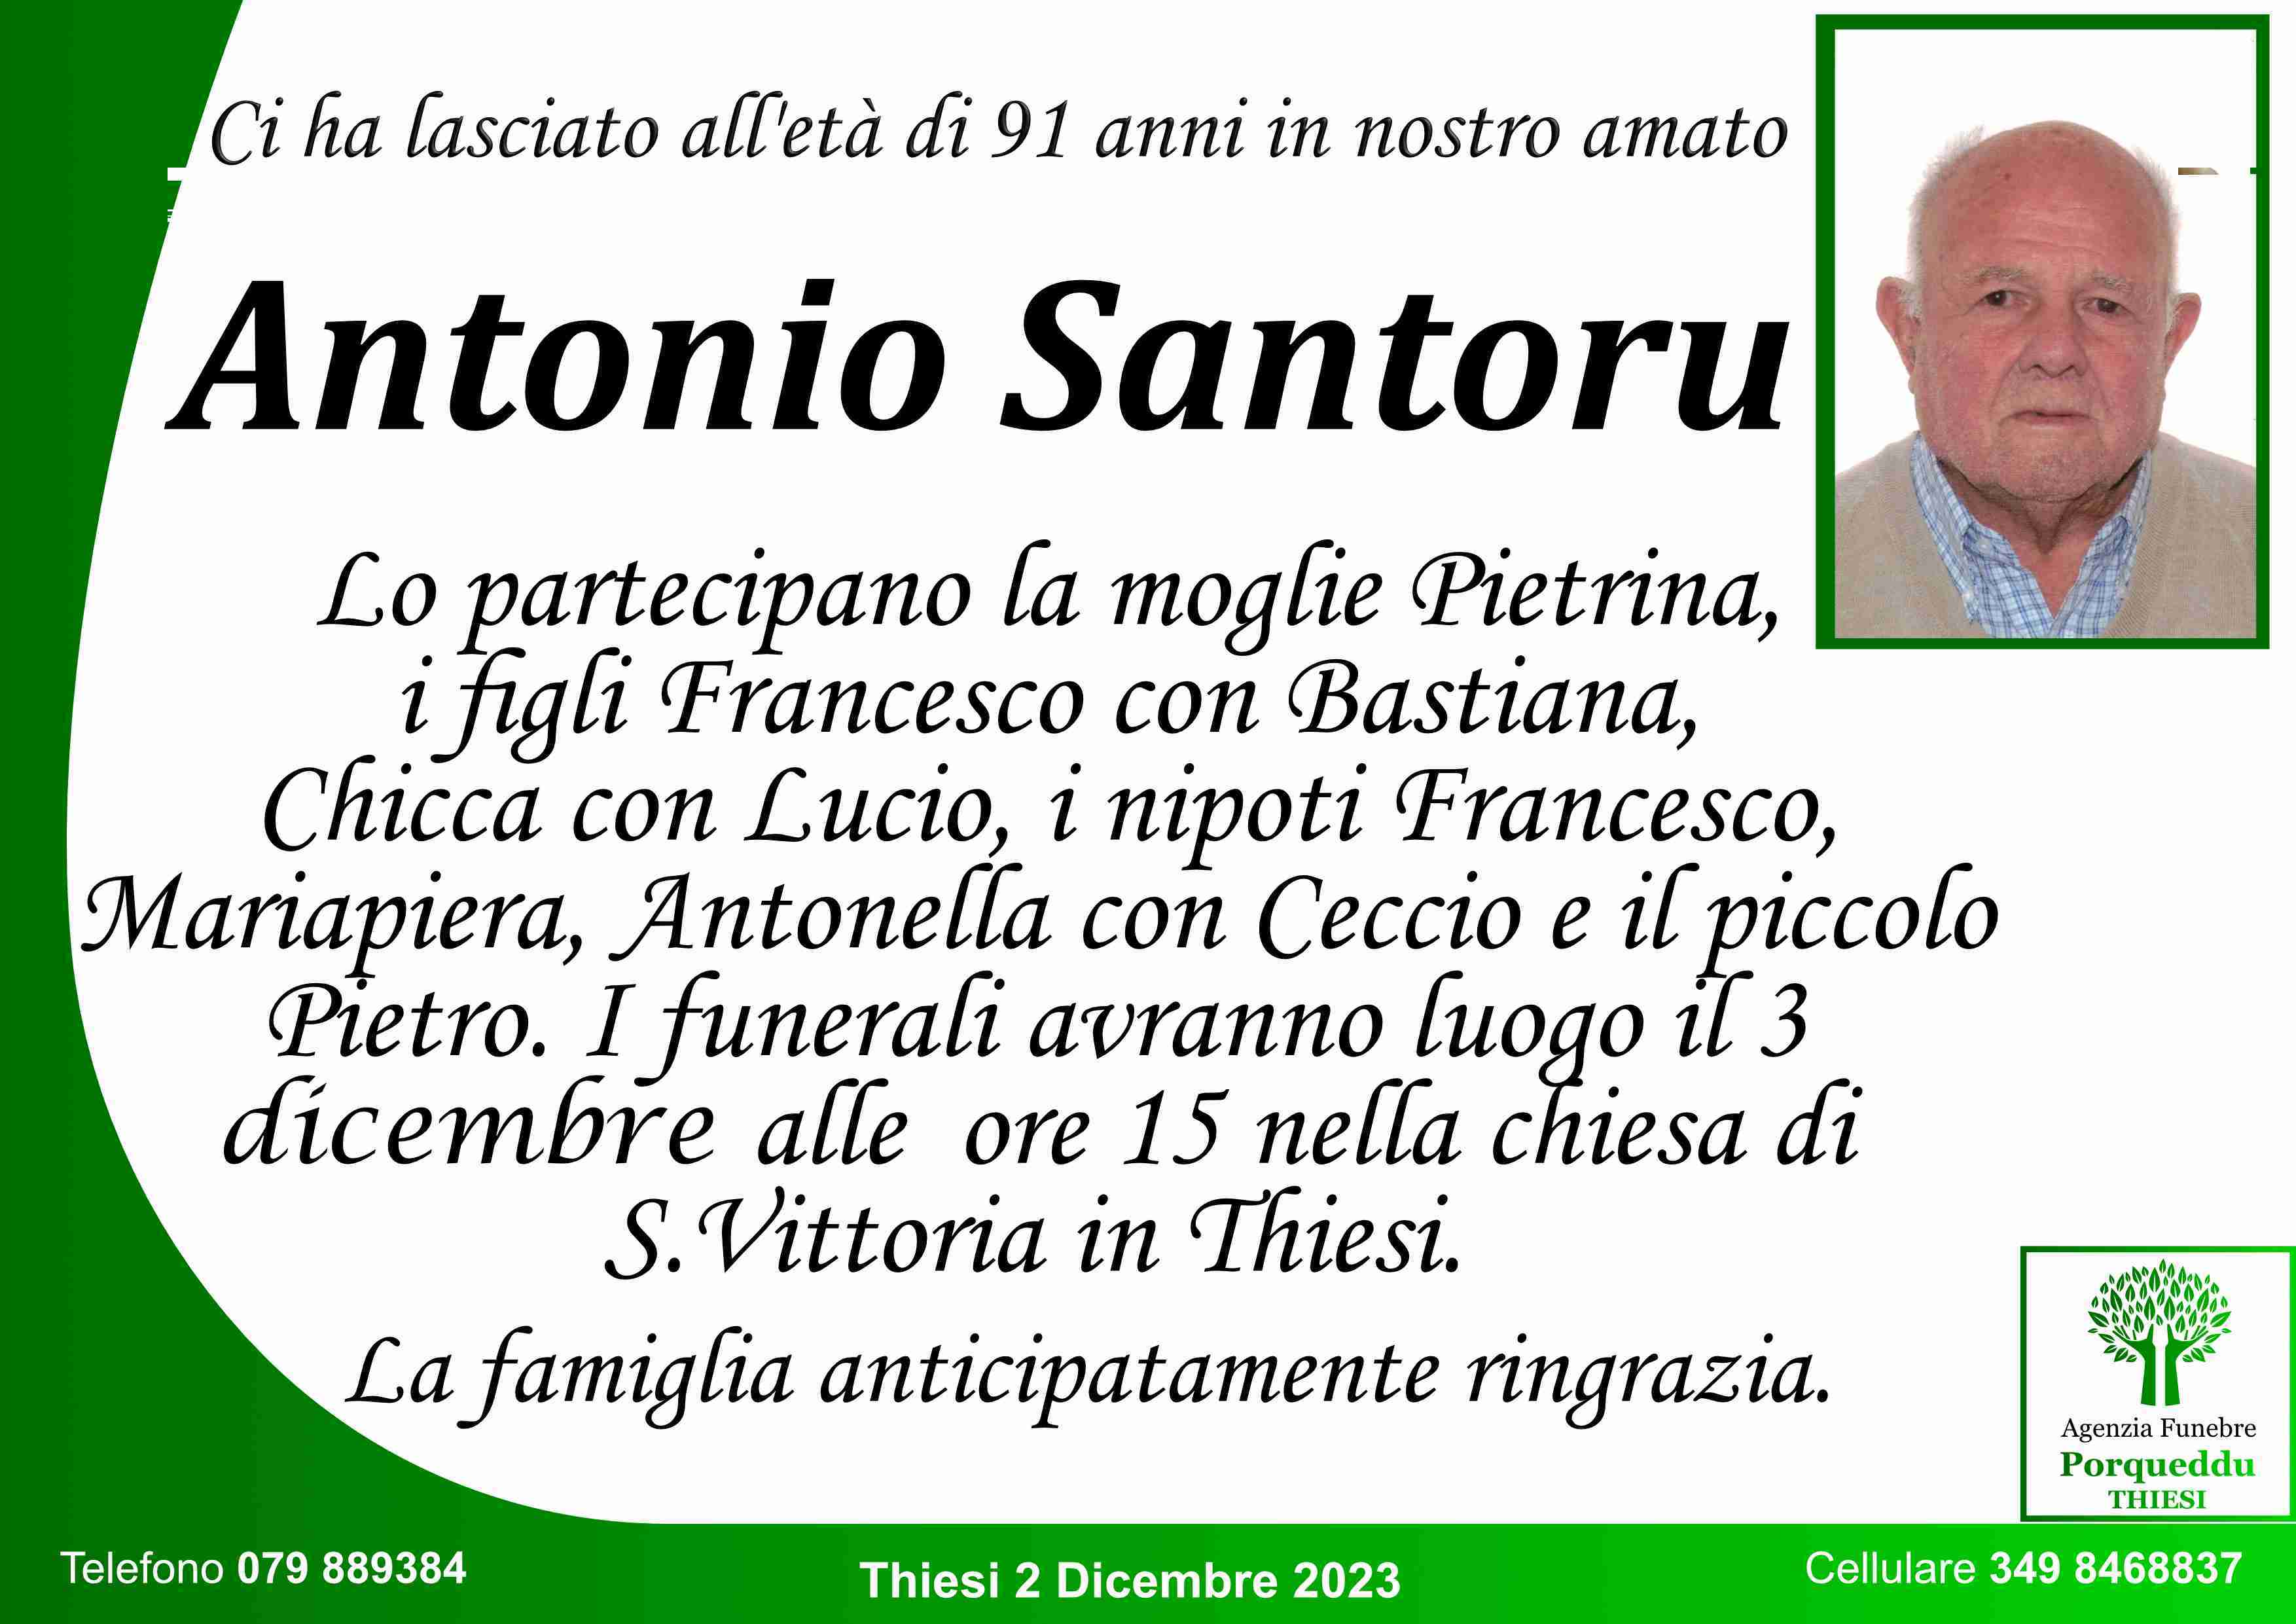 Antonio Santoru